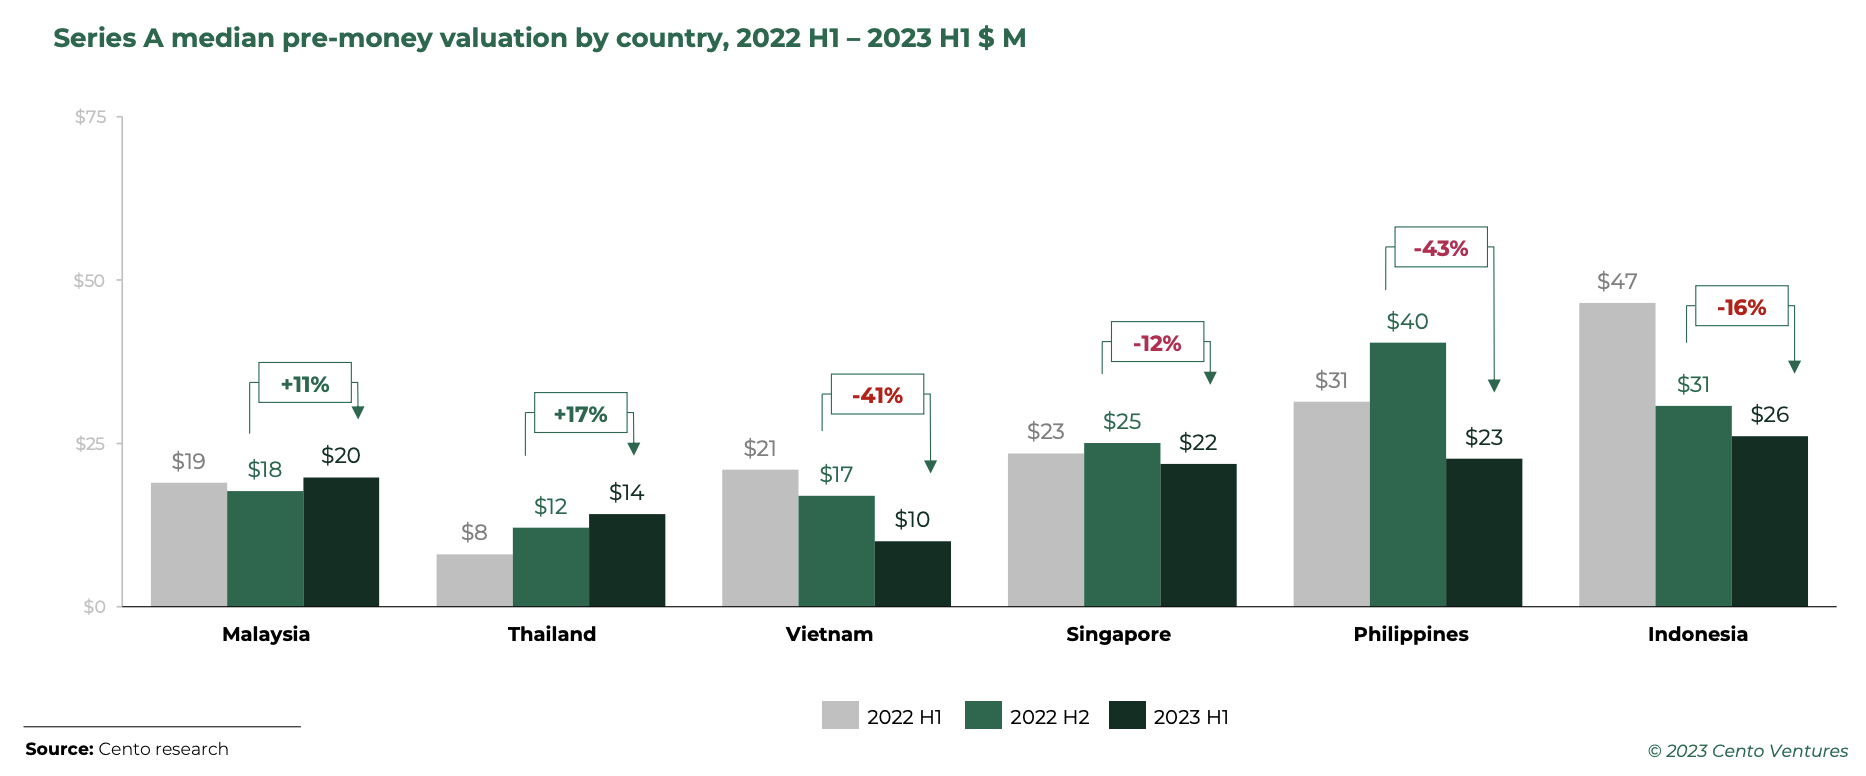 السلسلة أ متوسط ​​التقييم المسبق للنقود حسب البلد، النصف الأول من عام 2022 - النصف الأول من عام 1 بمليون دولار أمريكي، المصدر: جنوب شرق آسيا للاستثمار التكنولوجي في النصف الأول من عام 2023، Cento Ventures، ديسمبر 1